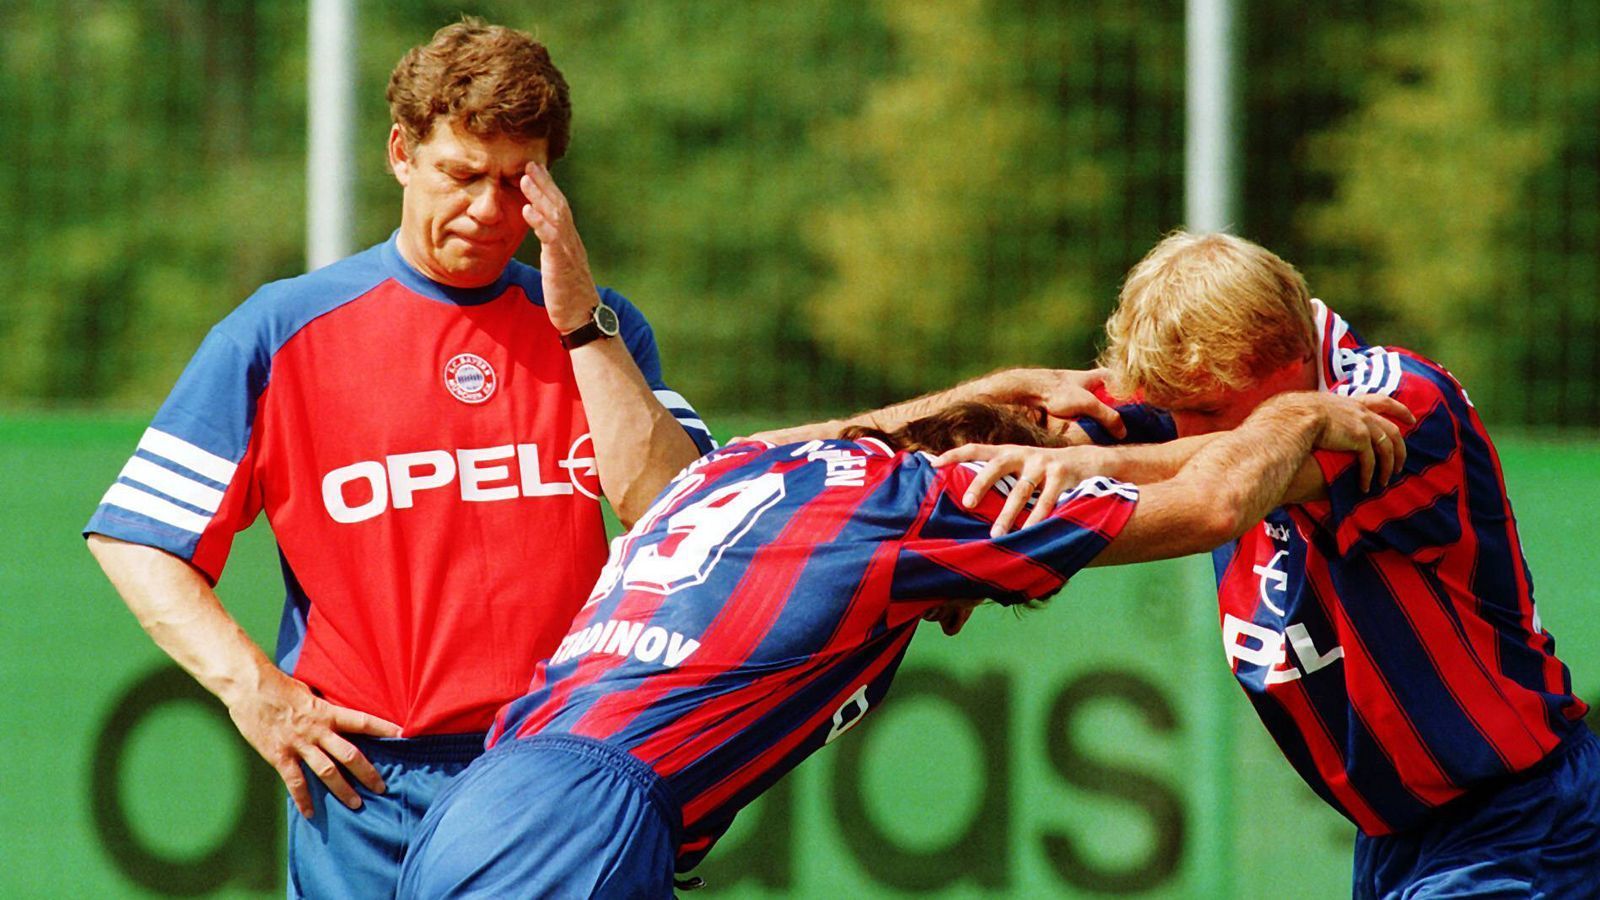 
                <strong>Otto Rehhagel</strong><br>
                Eine 0:1-Heimniederlage gegen Hansa Rostock im April 1996 besiegelte Ottos Schicksal. Rehhagel musste gehen obwohl er noch den UEFA-Pokal hätte holen können. Den gewann schließlich Franz Beckenbauer mit der Mannschaft, die Rehhagel abgesägt hatte.
              